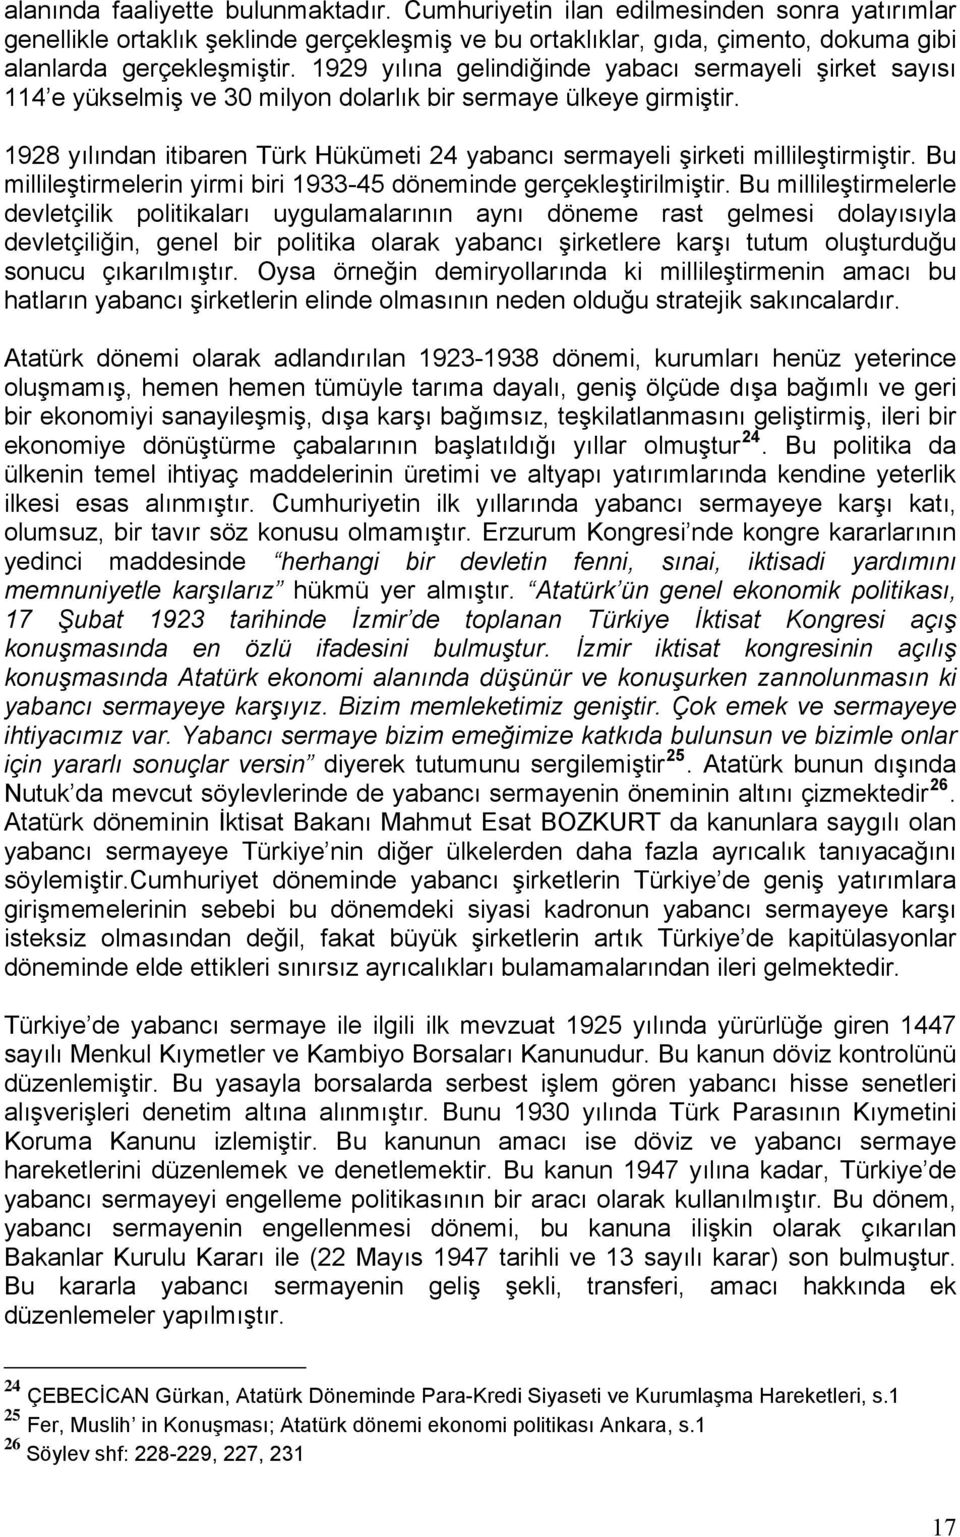 1928 yılından itibaren Türk Hükümeti 24 yabancı sermayeli şirketi millileştirmiştir. Bu millileştirmelerin yirmi biri 1933-45 döneminde gerçekleştirilmiştir.